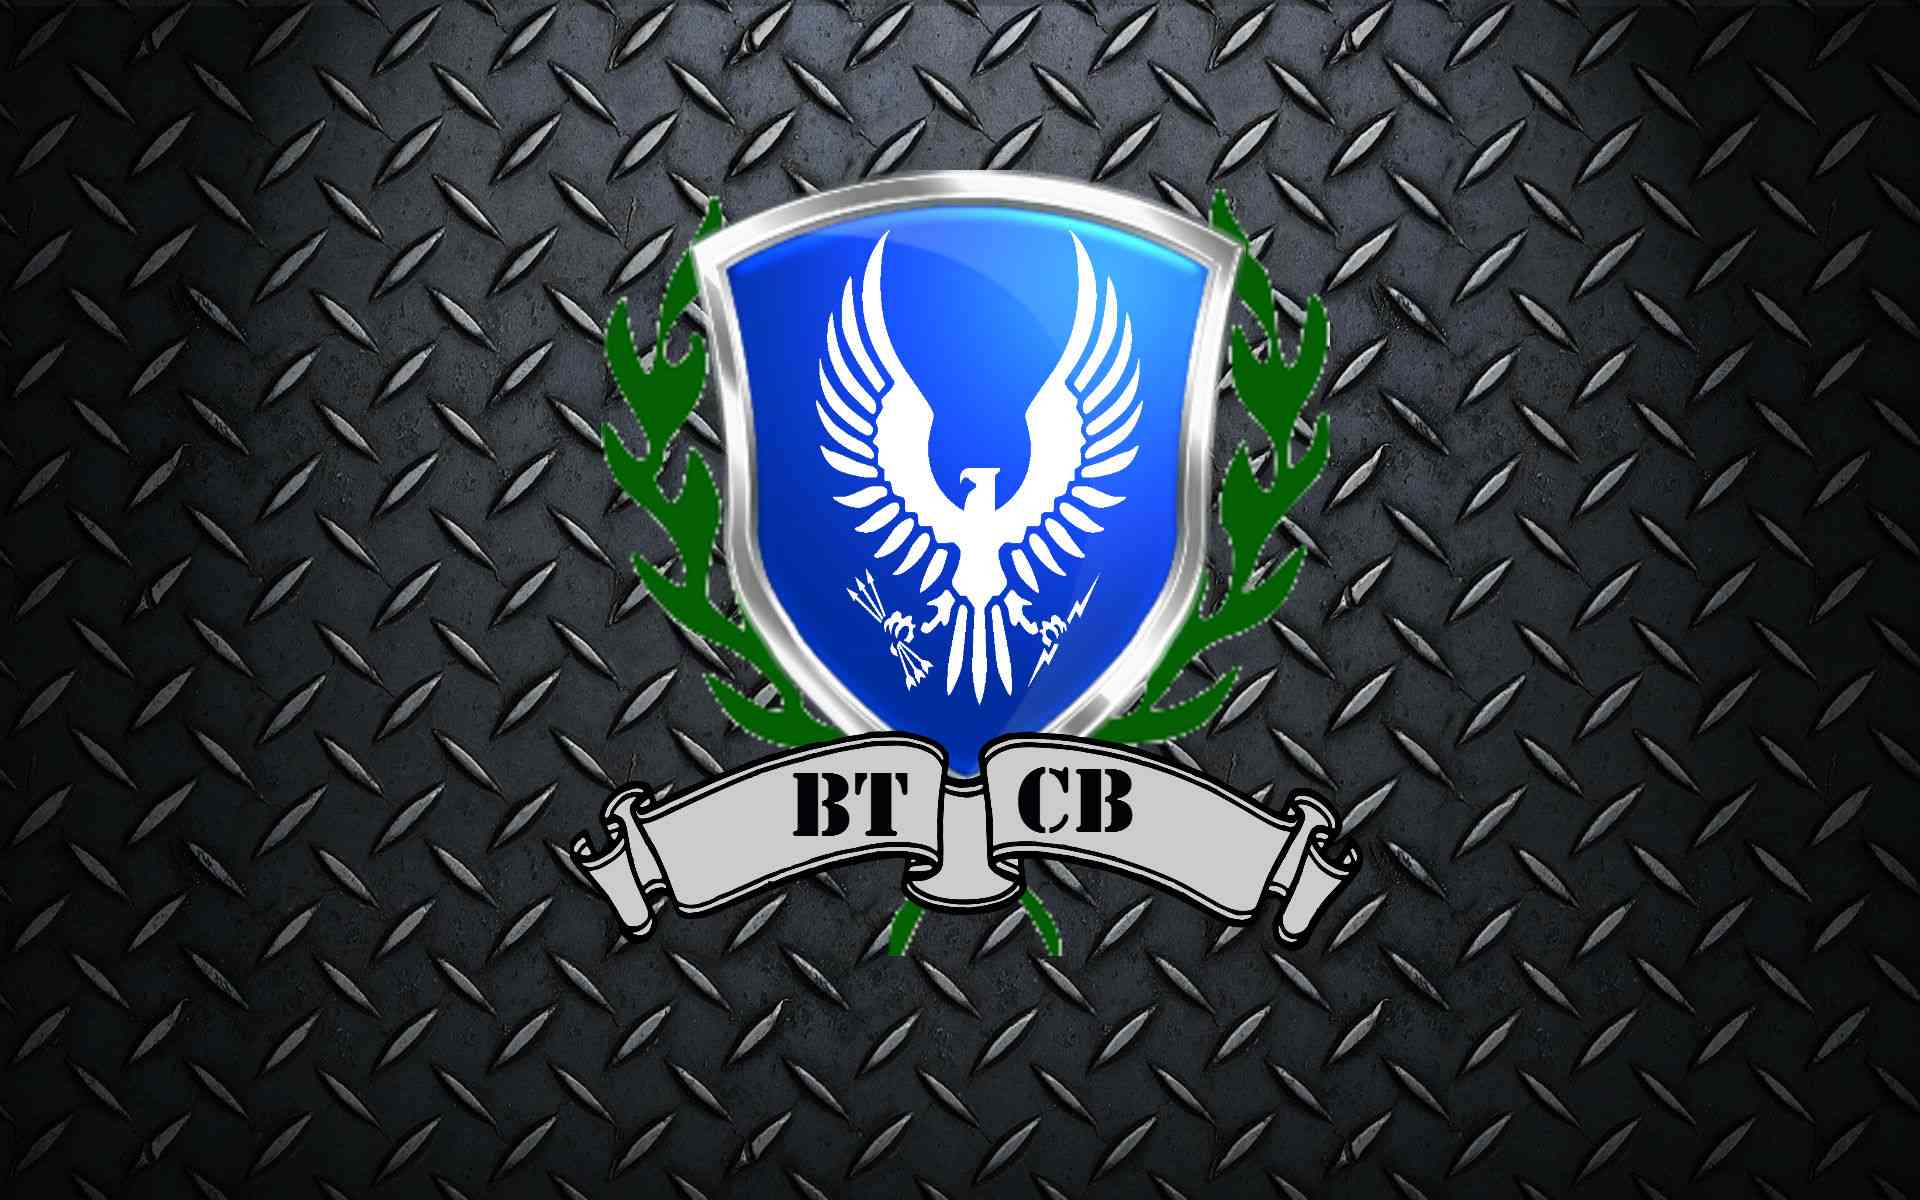 BT-CB pozadina desktop Btcb_m11